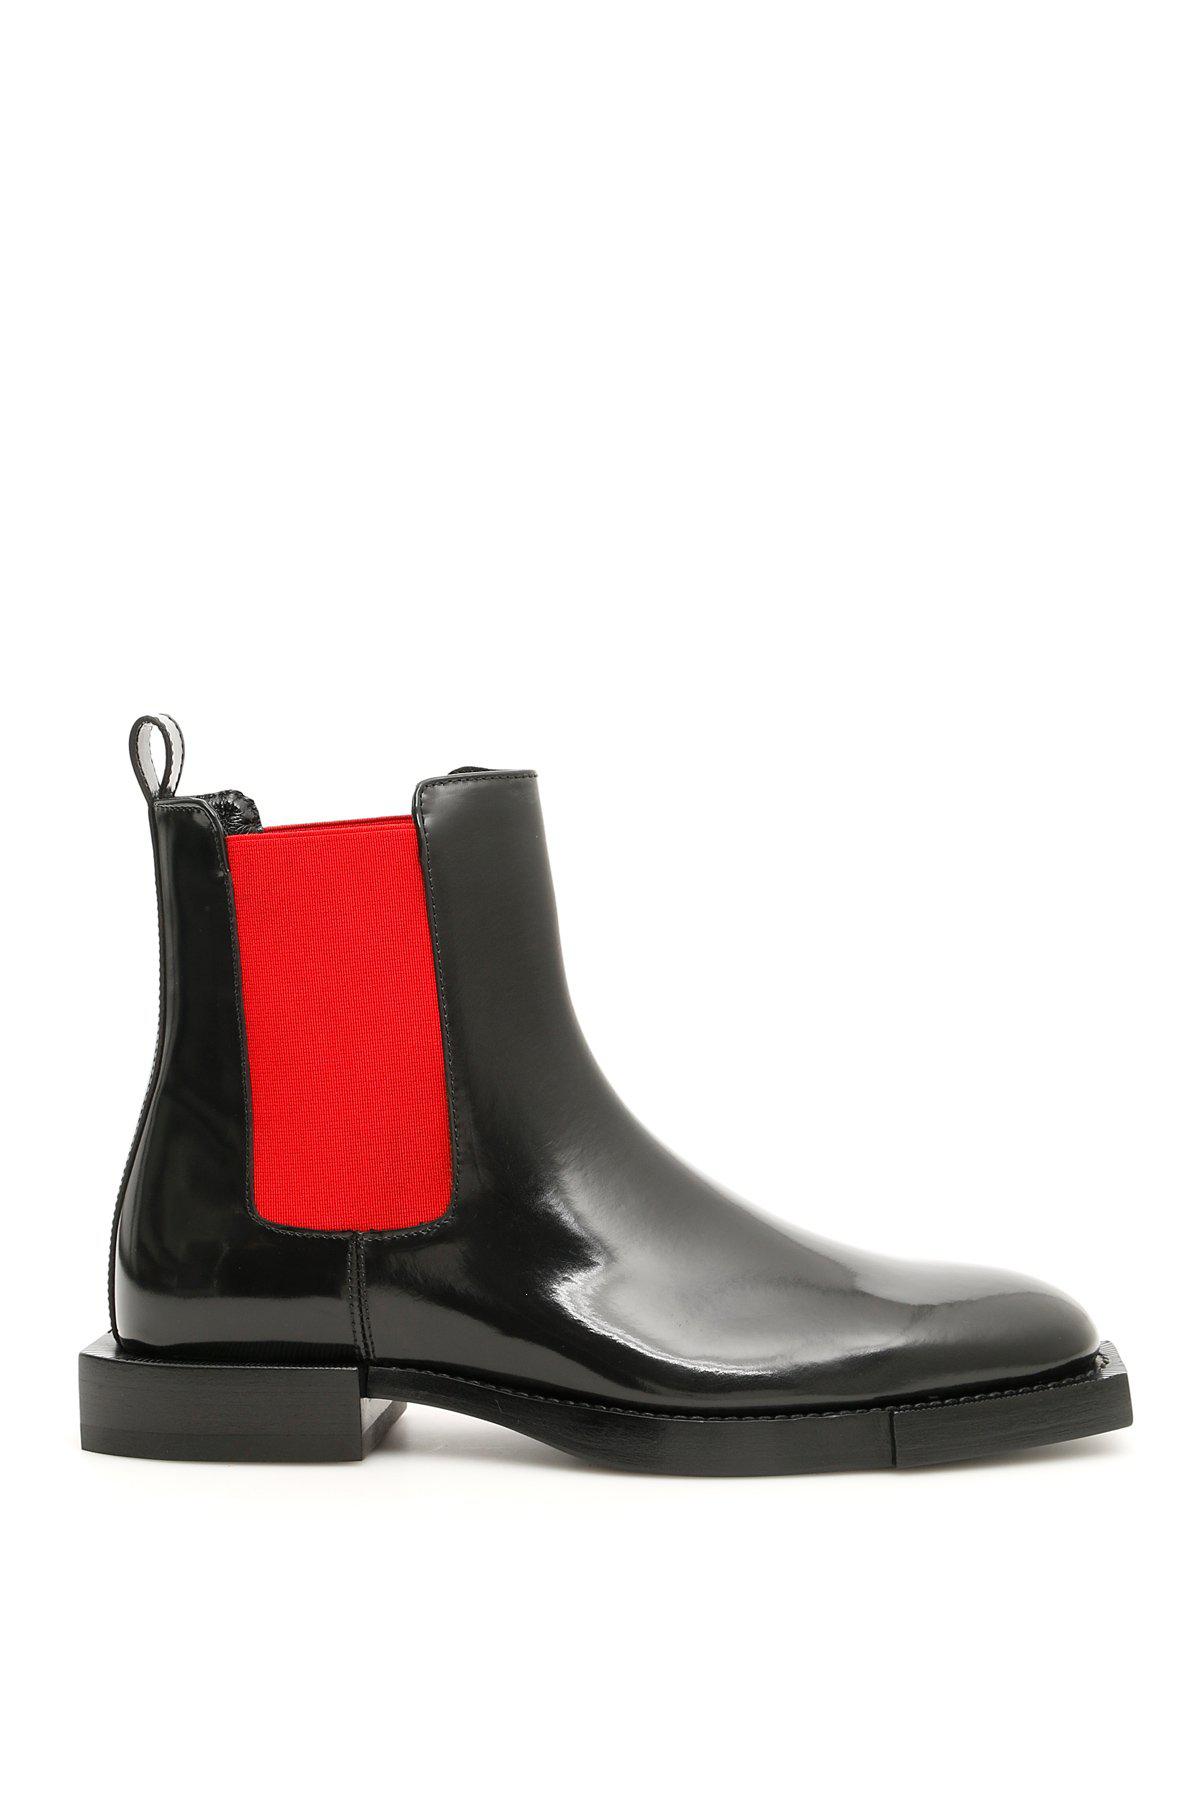 Alexander McQueen Leather Chelsea Boots 